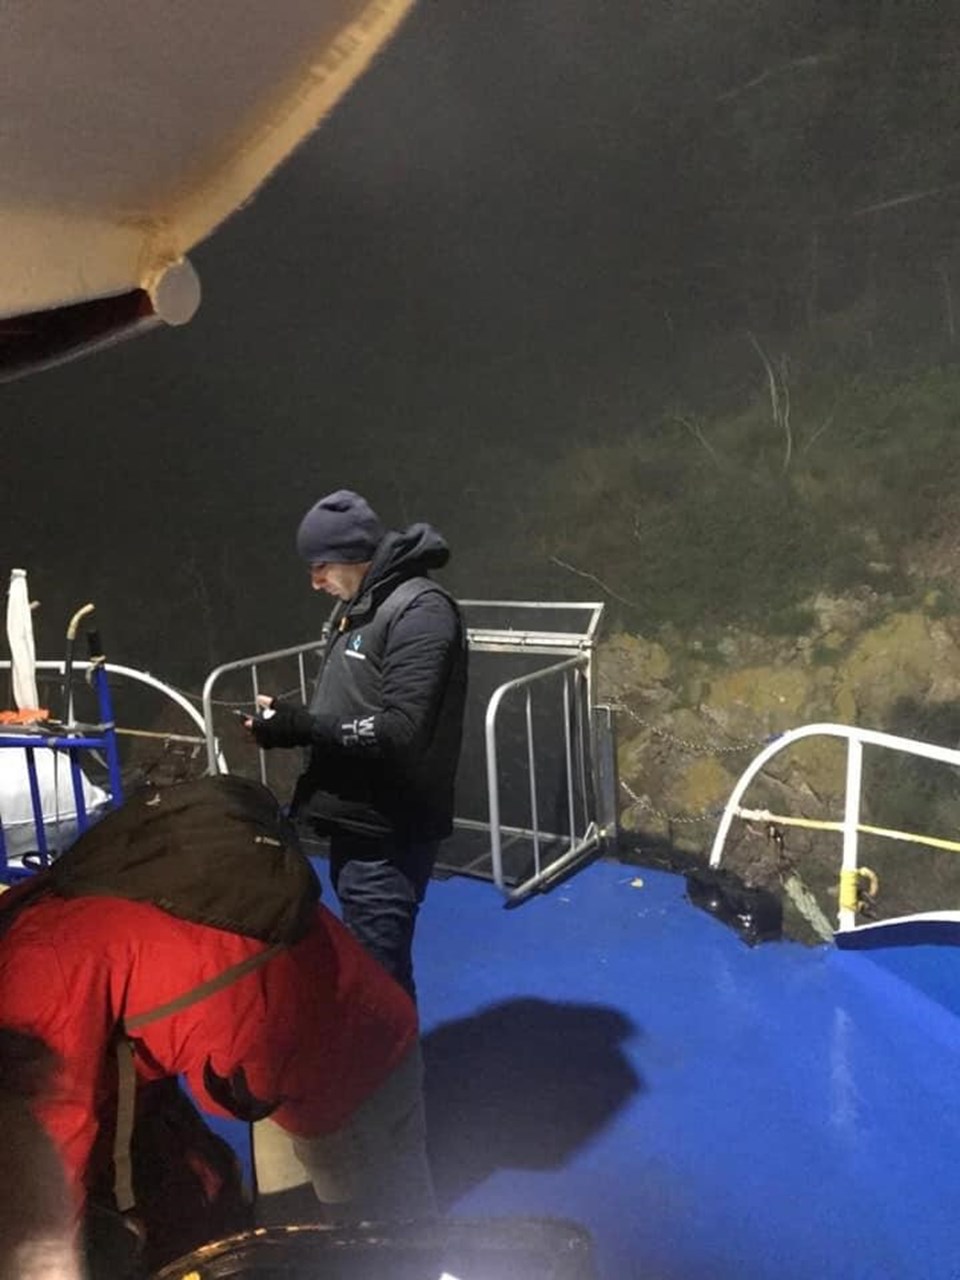 SON DAKİKA: Bostancı-Adalar seferini yapan yolcu motoru yoğun sis nedeniyle karaya oturdu - 1